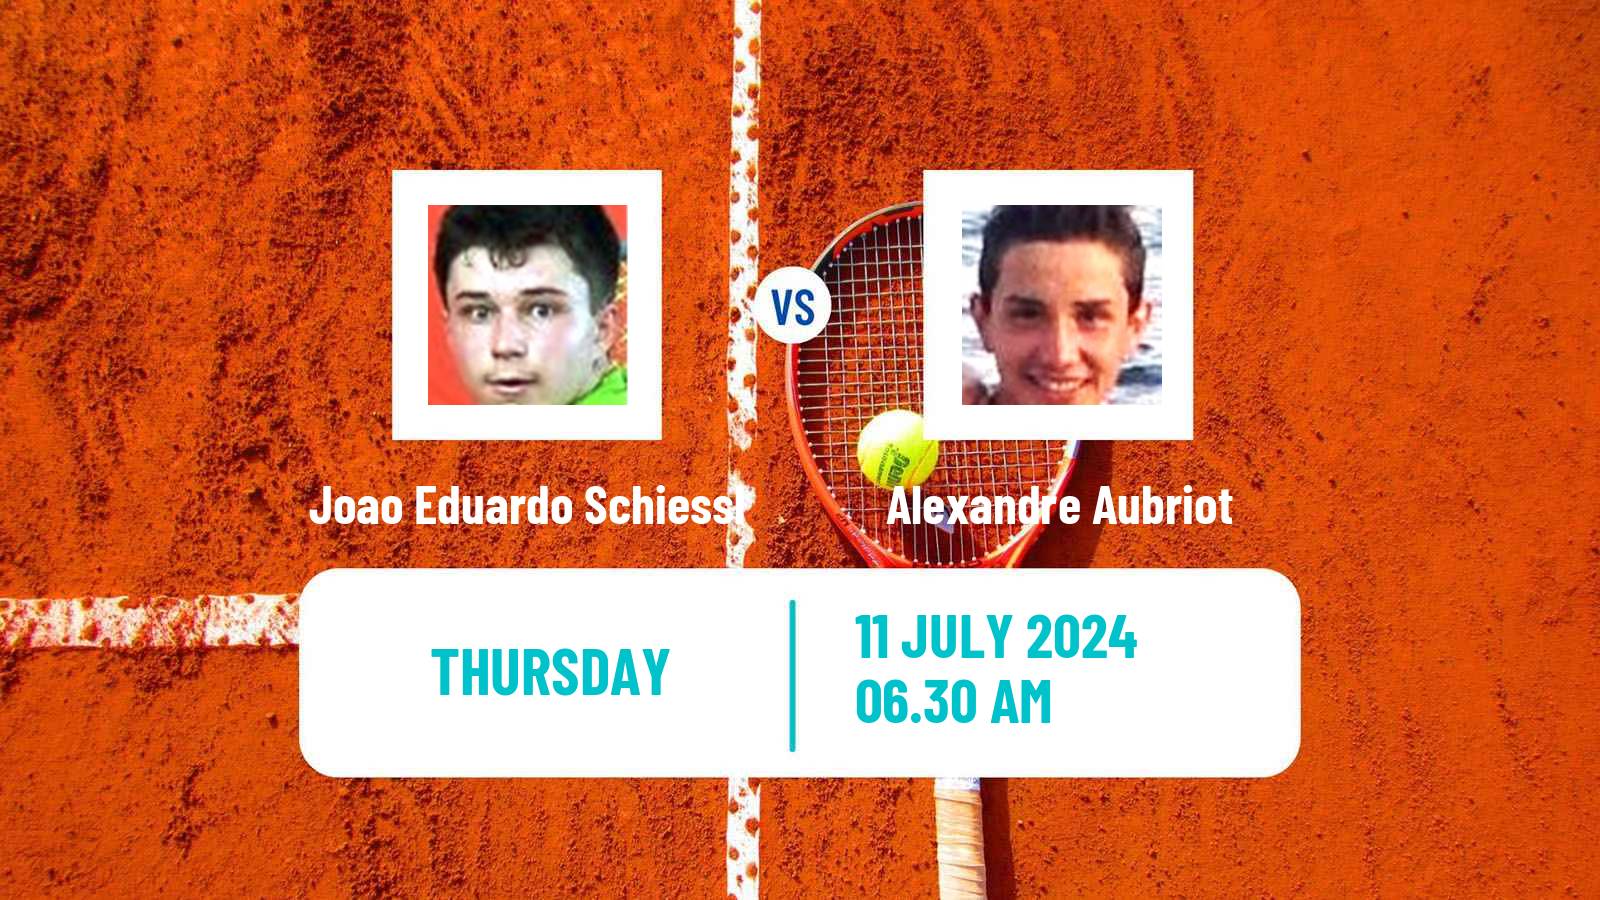 Tennis ITF M25 Uriage Men Joao Eduardo Schiessl - Alexandre Aubriot